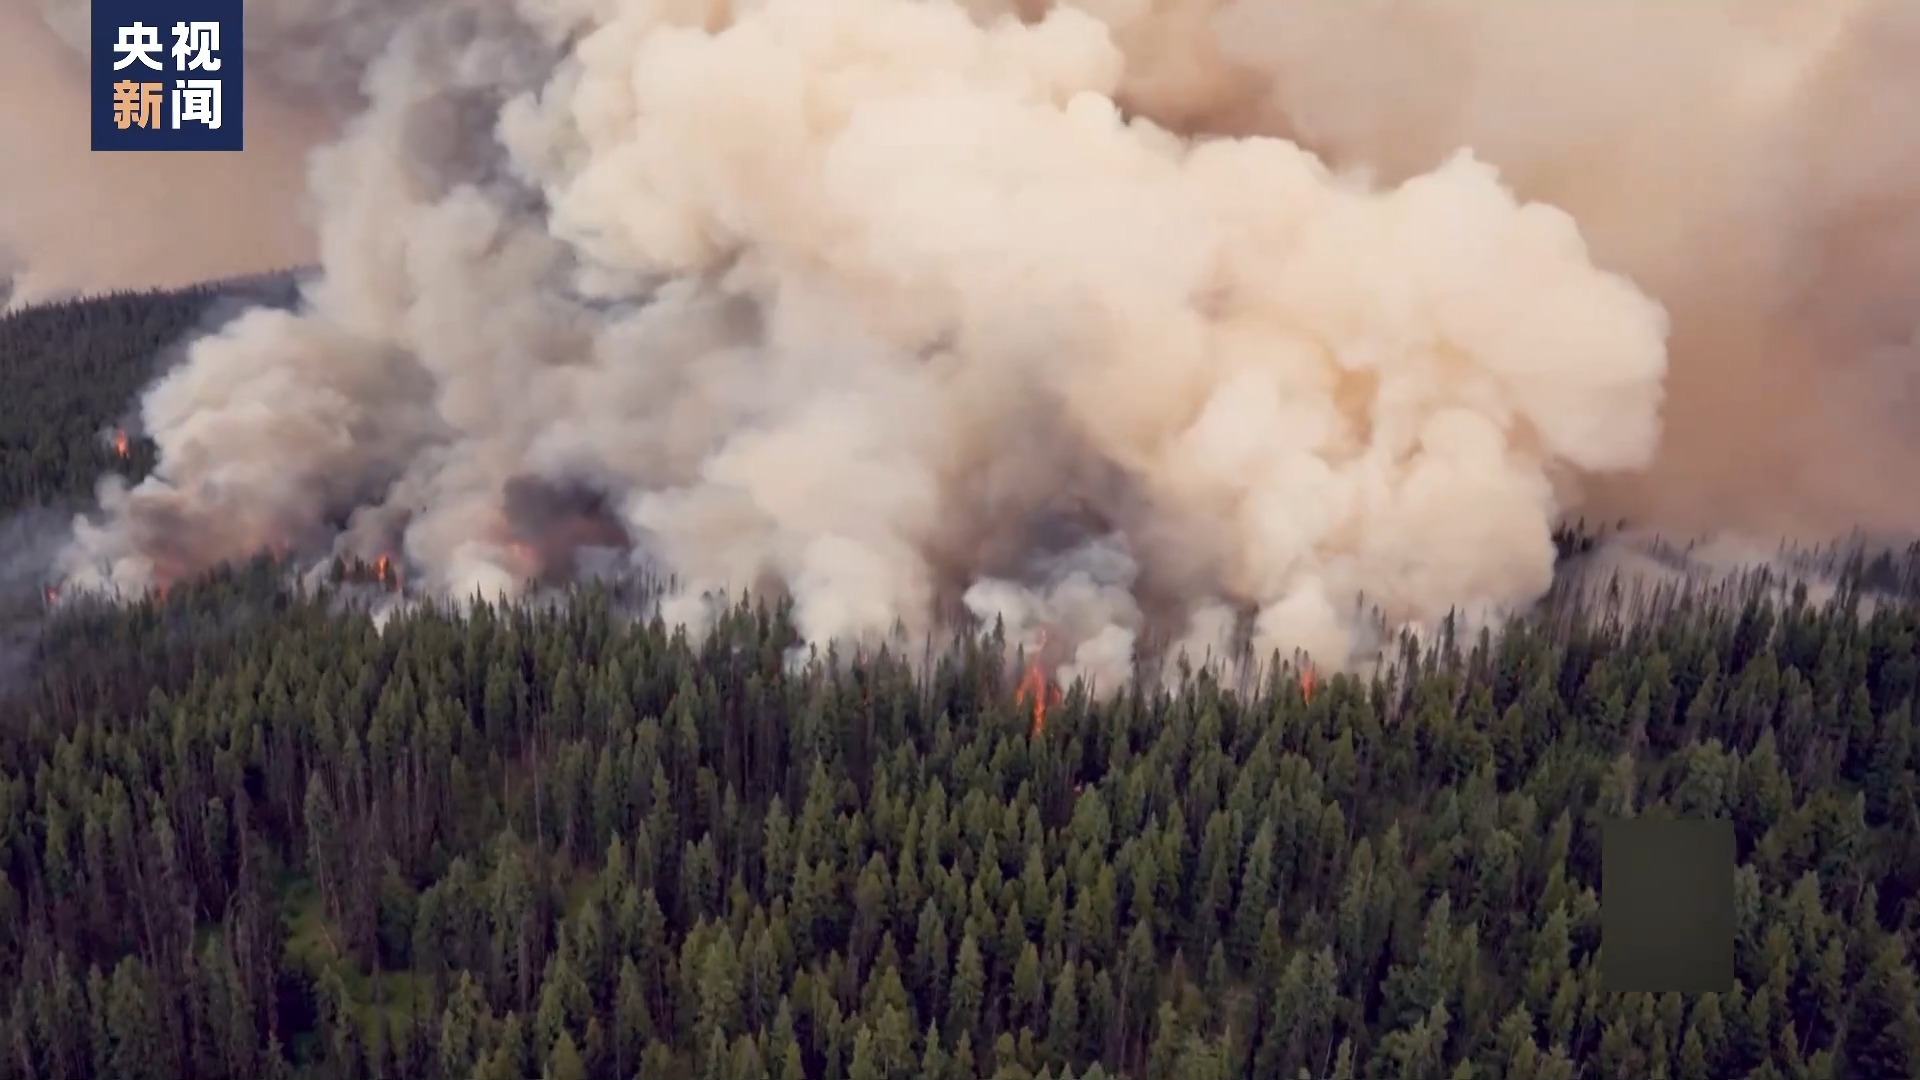 拯救公主计划:美国加州北部山火导致数千人疏散